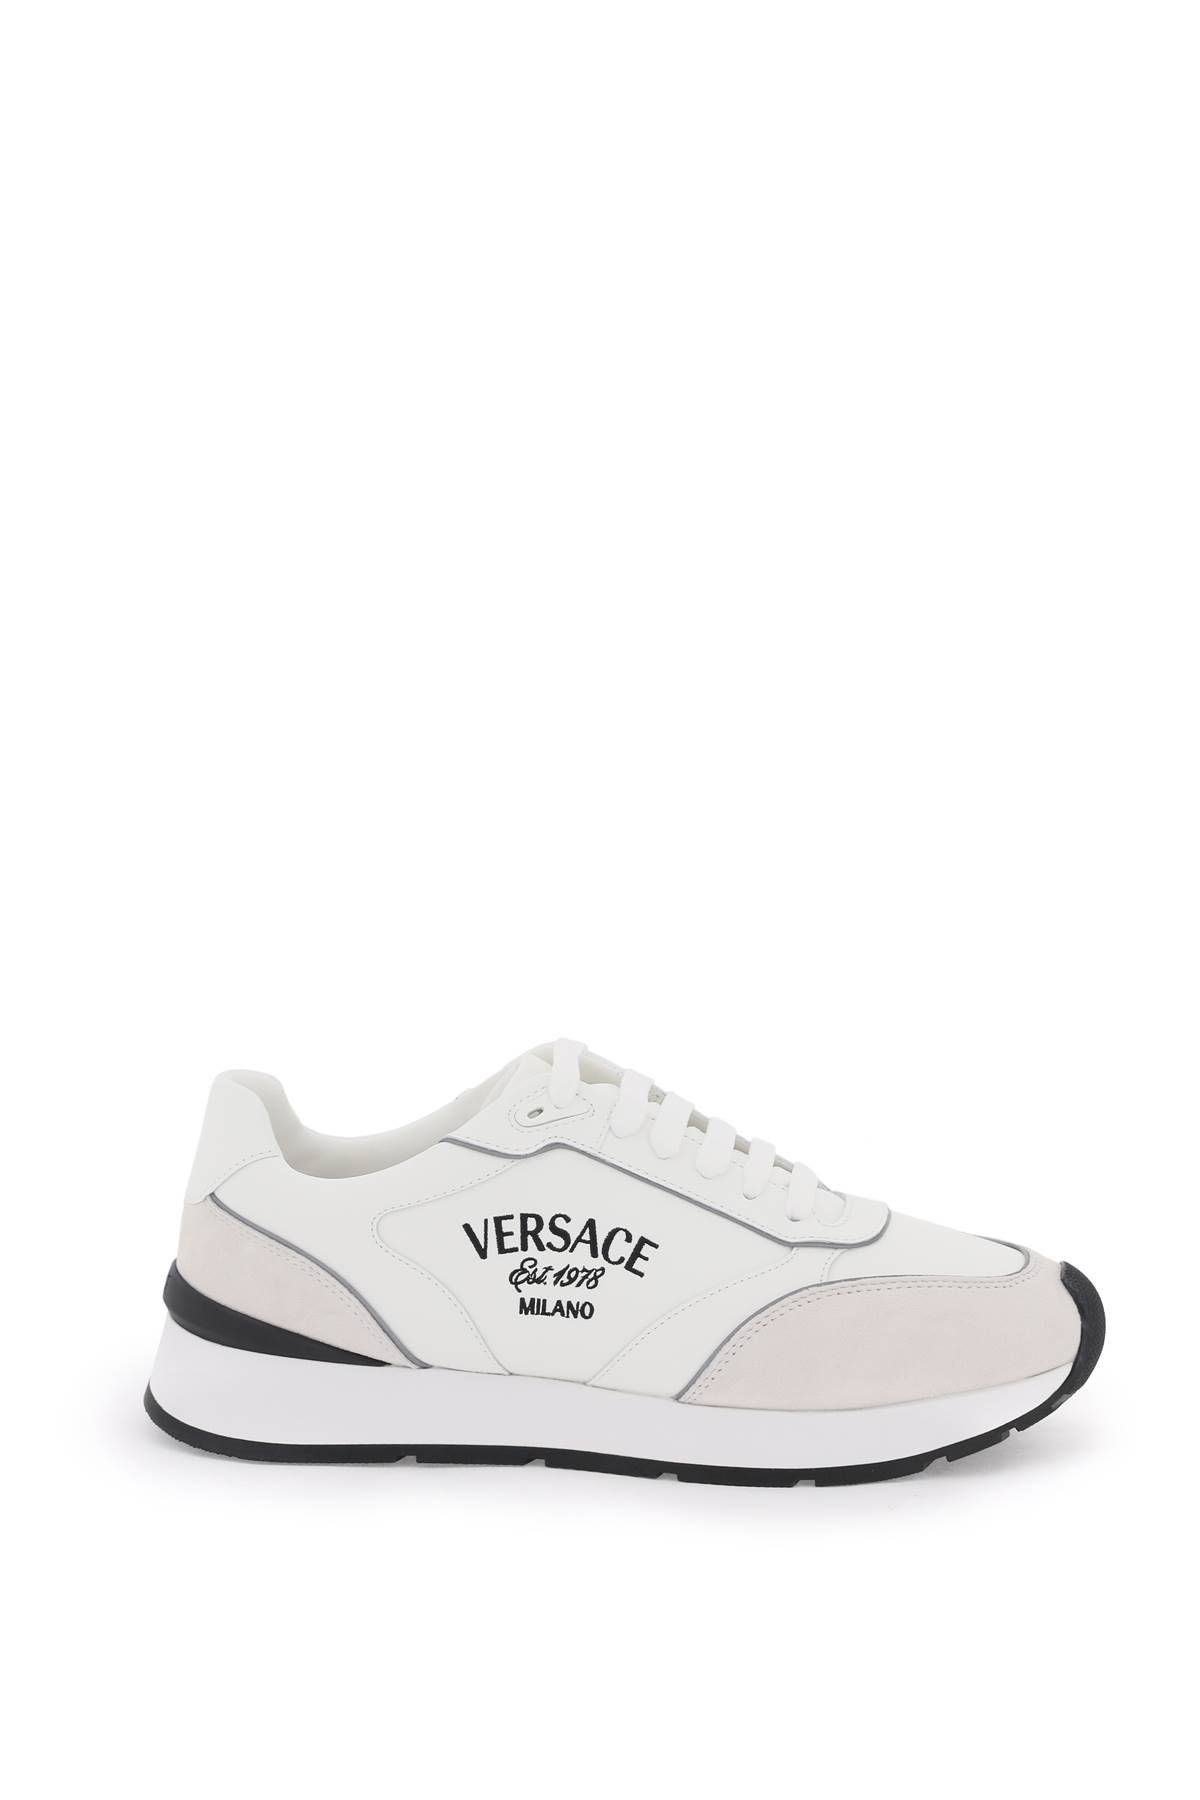 Versace VERSACE milano runner sneakers